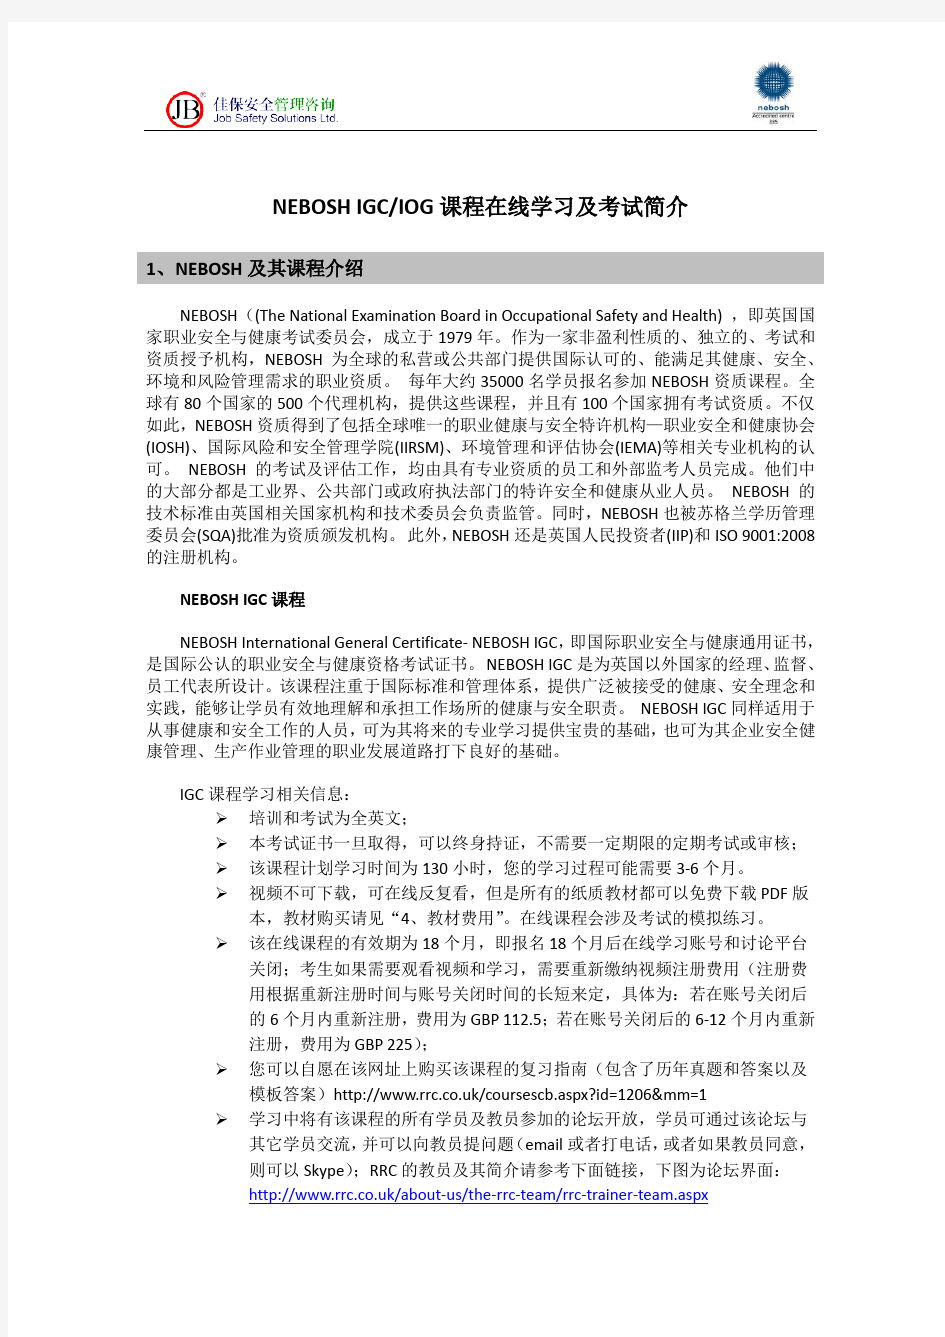 深圳市佳保安全NEBOSH在线课程学习和考试简介20140718